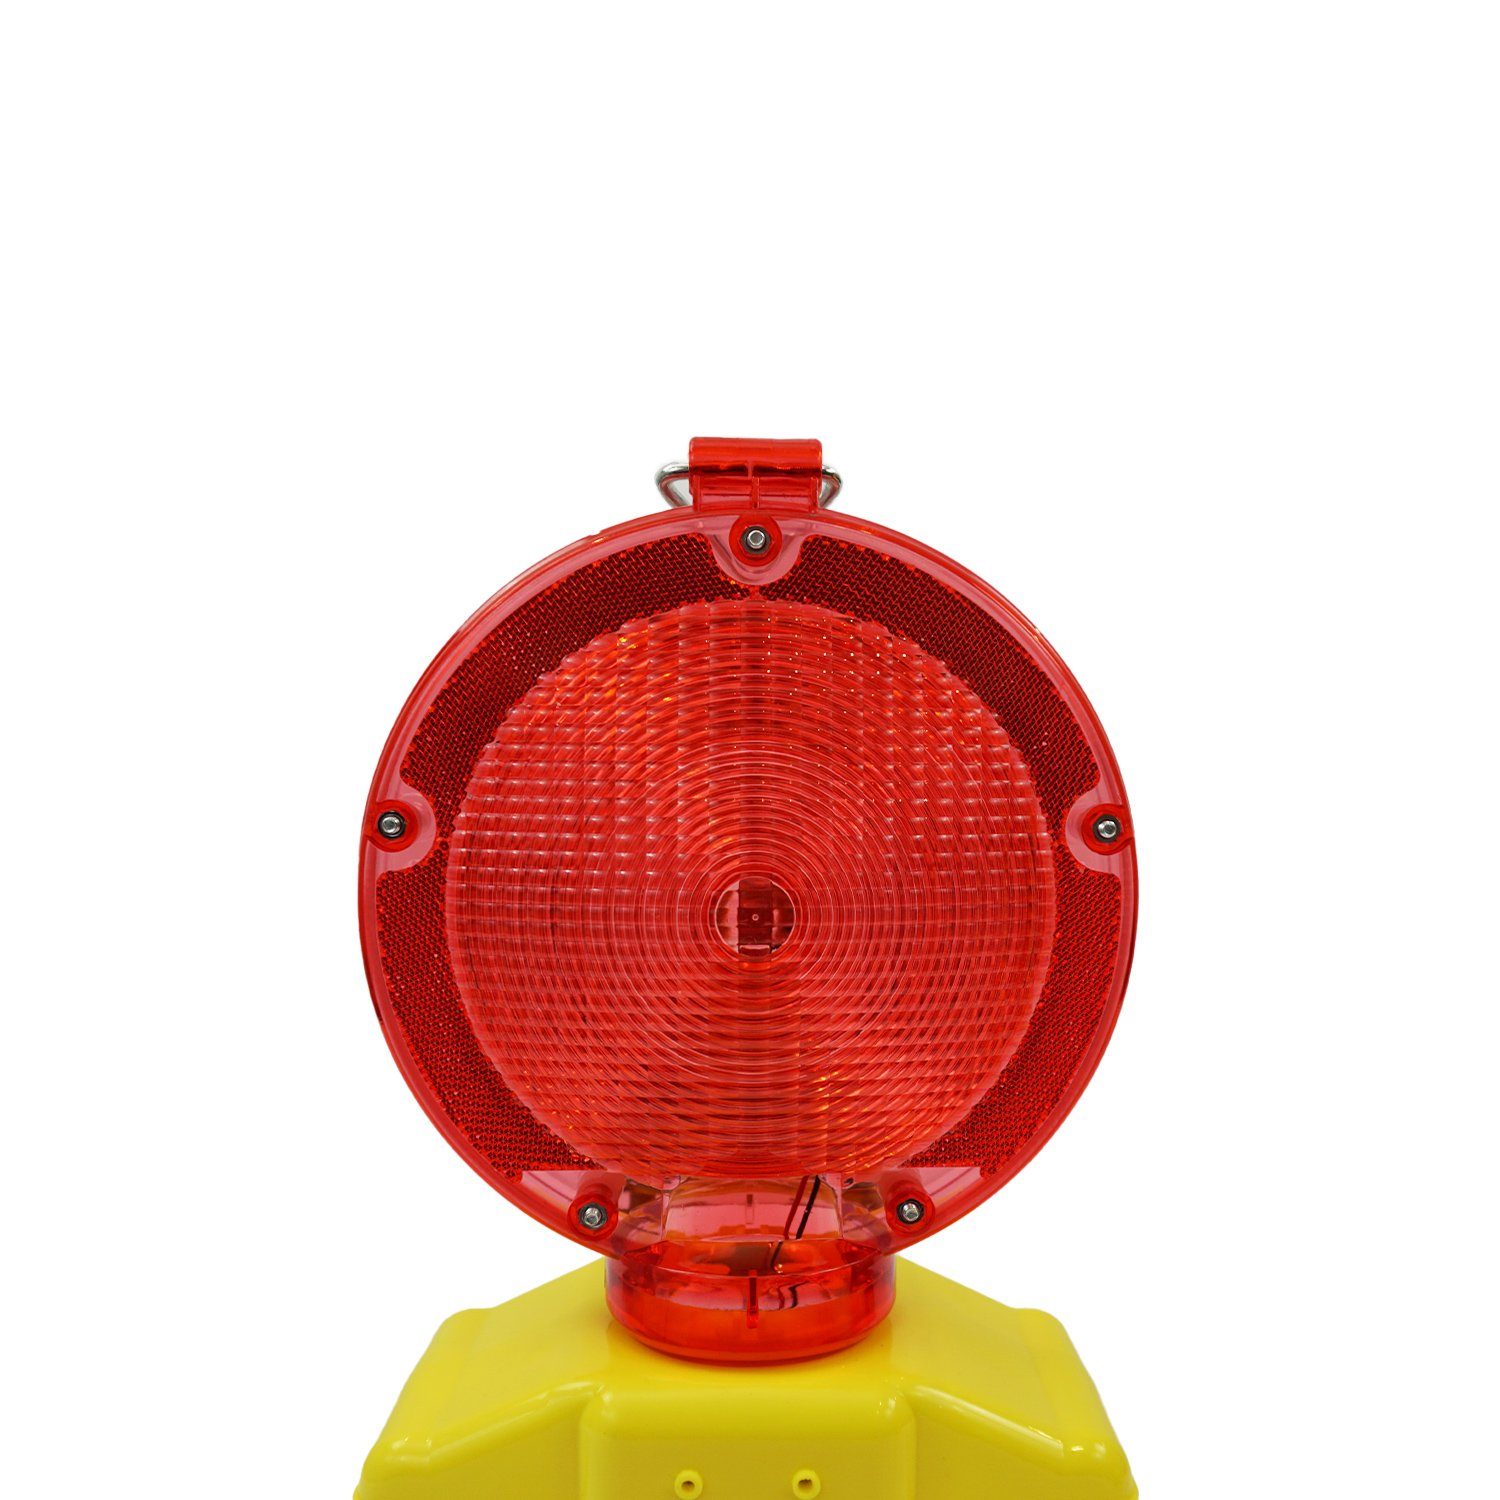 siwitec Baustrahler LED mit Dauerlichtfunktion, Rot/Transparent Blink- Dämmerungsautomatik Dämmerungssensor und und Warnleuchte Lampenschlüssel